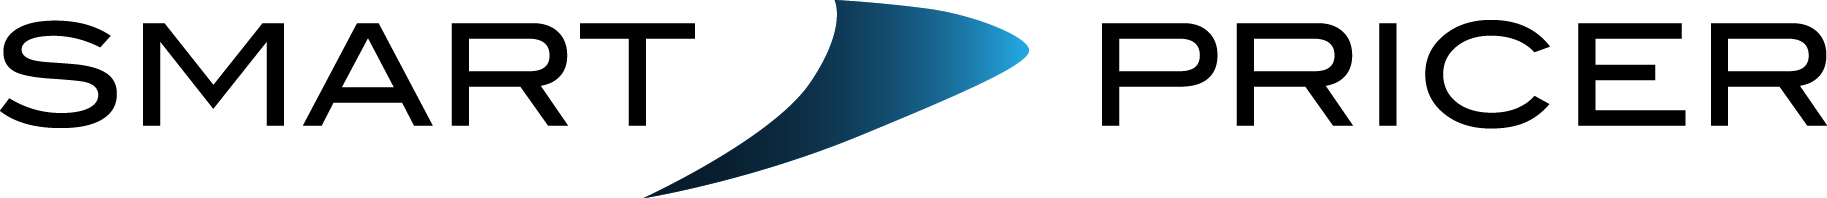 Smart Pricer Logo